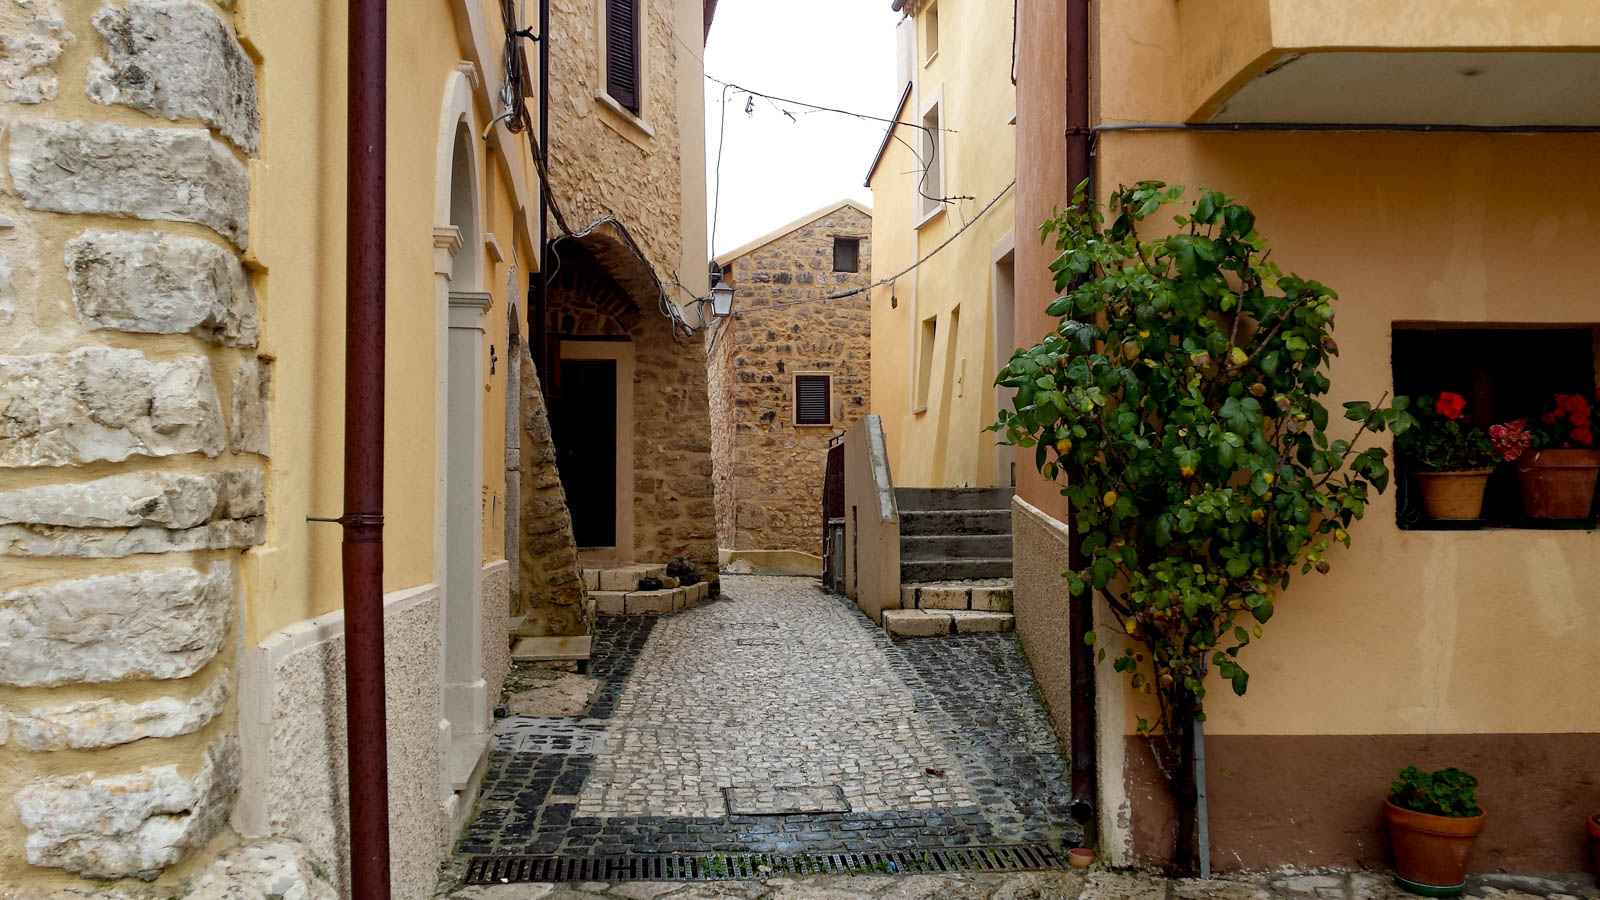 Italian Aged Taken in Alley